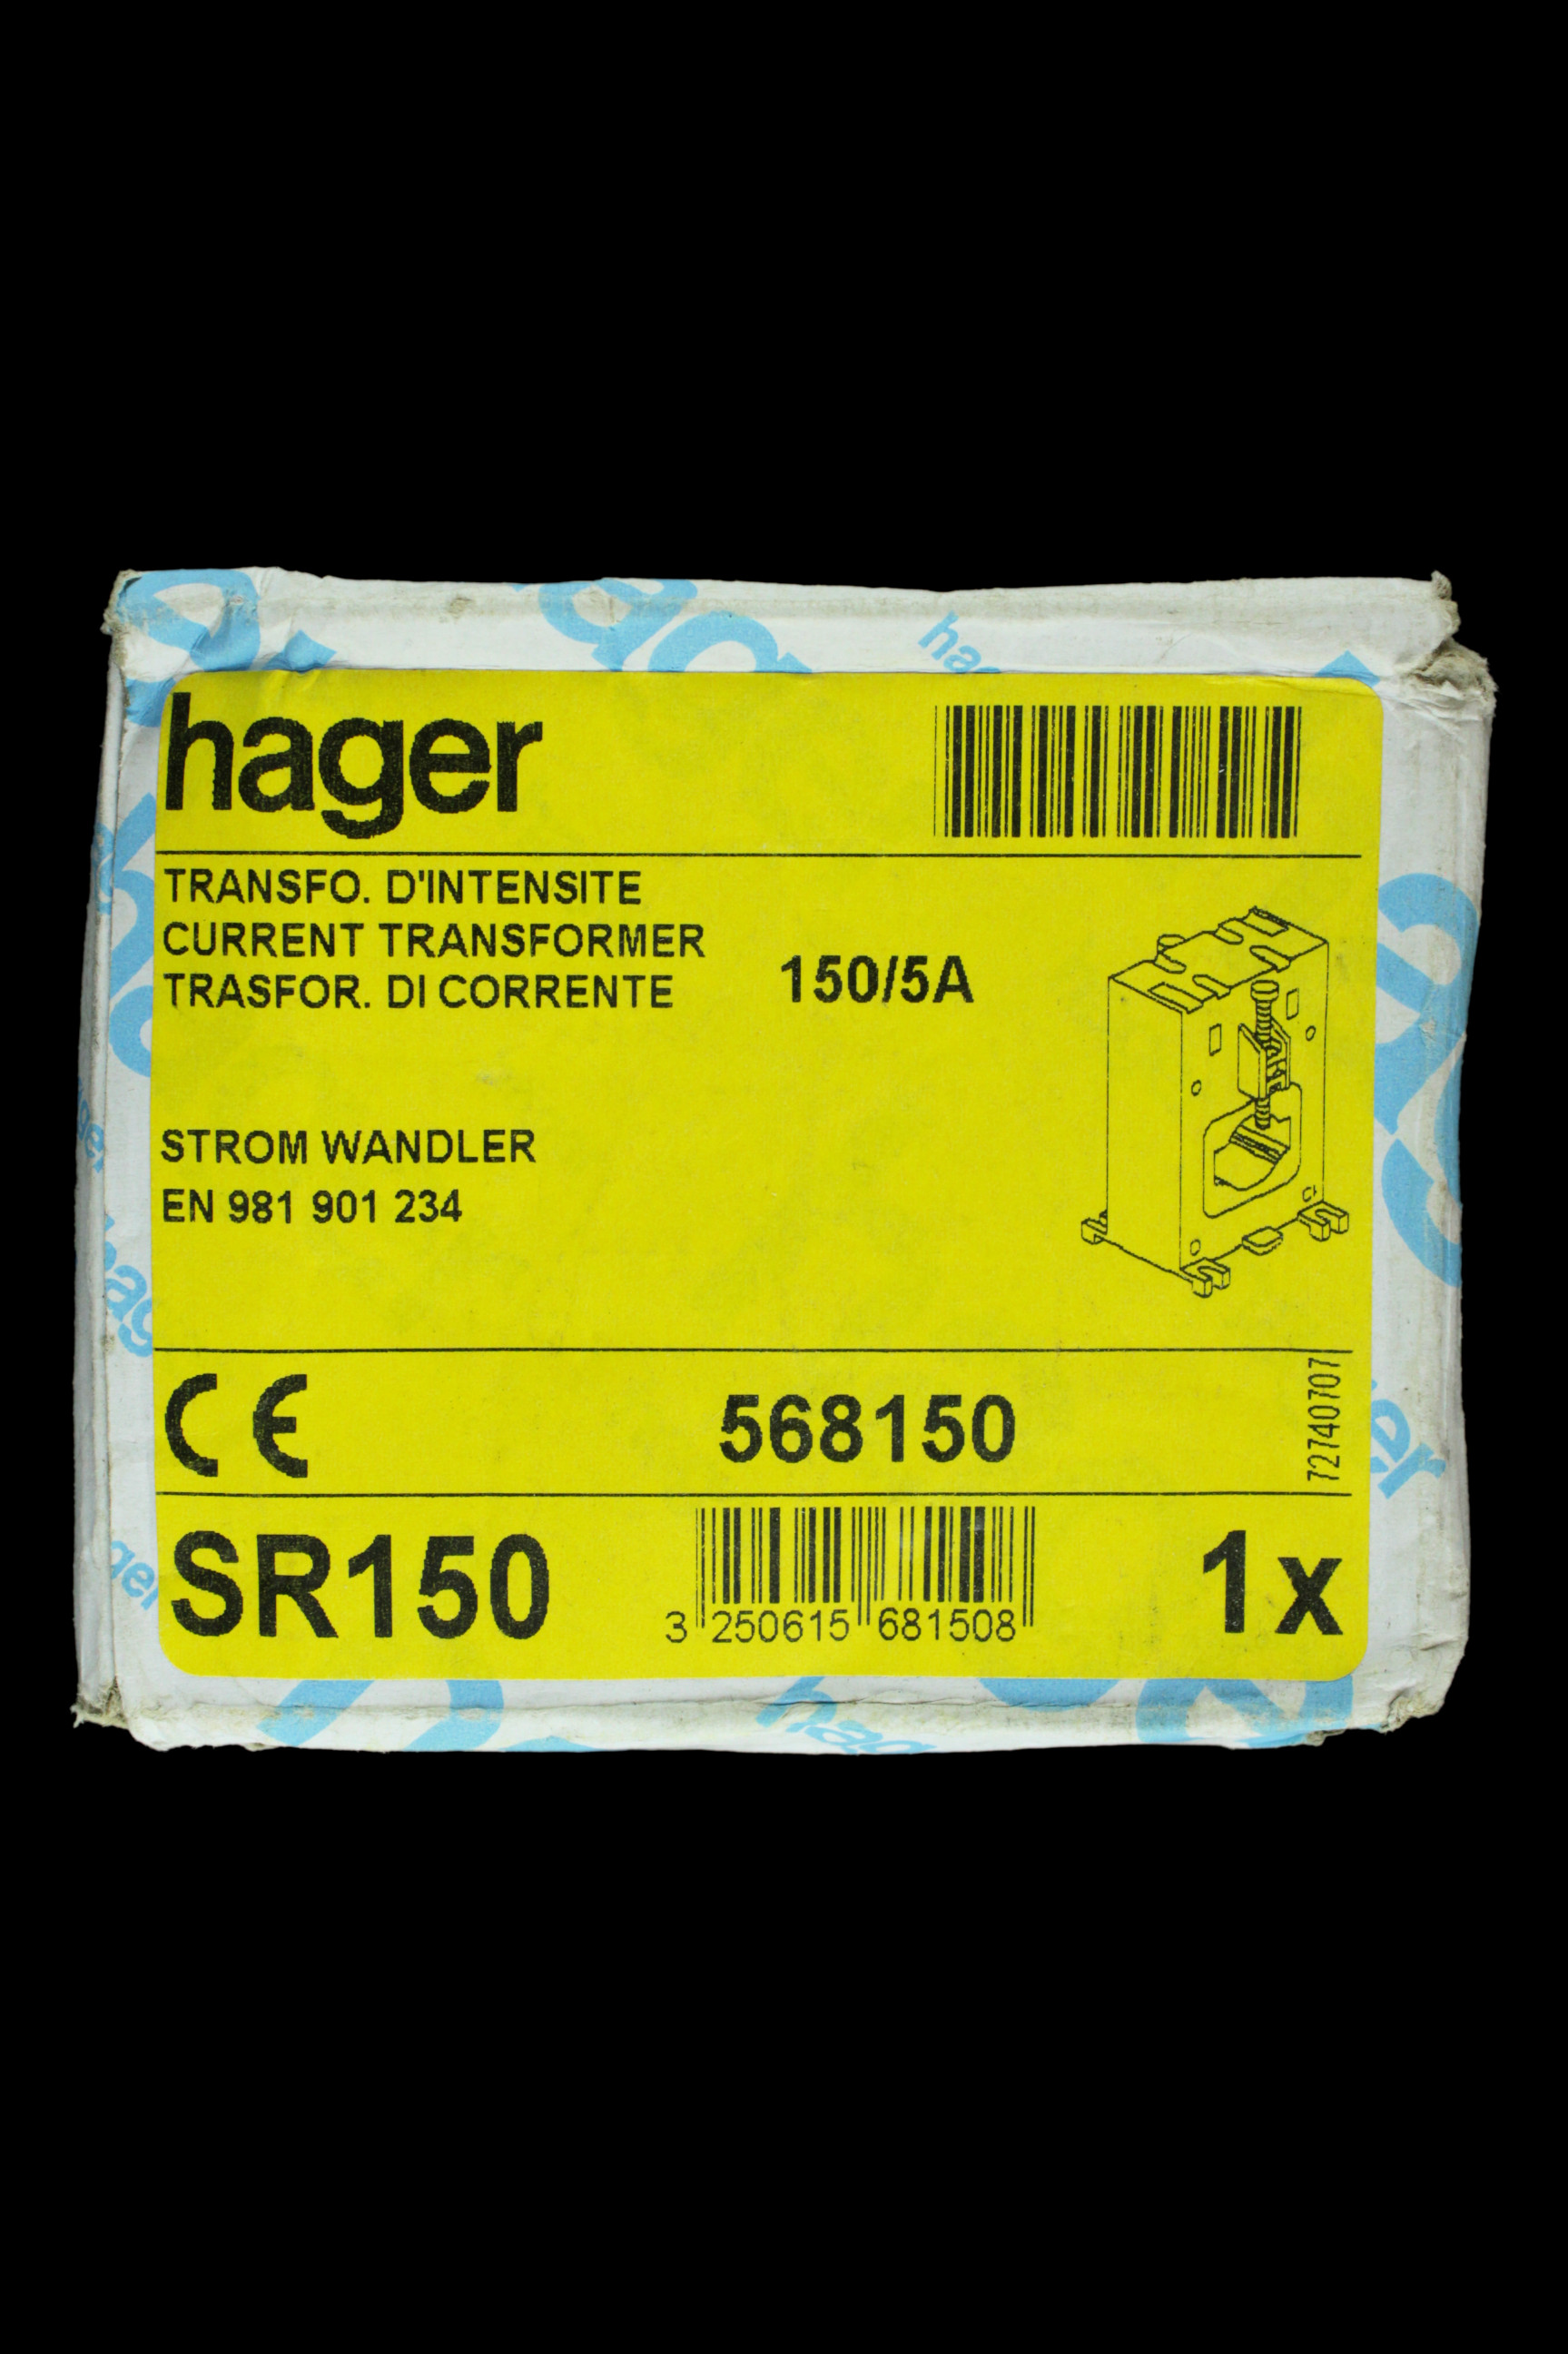 HAGER 150/5A CURRENT TRANSFORMER CT SR150 568150